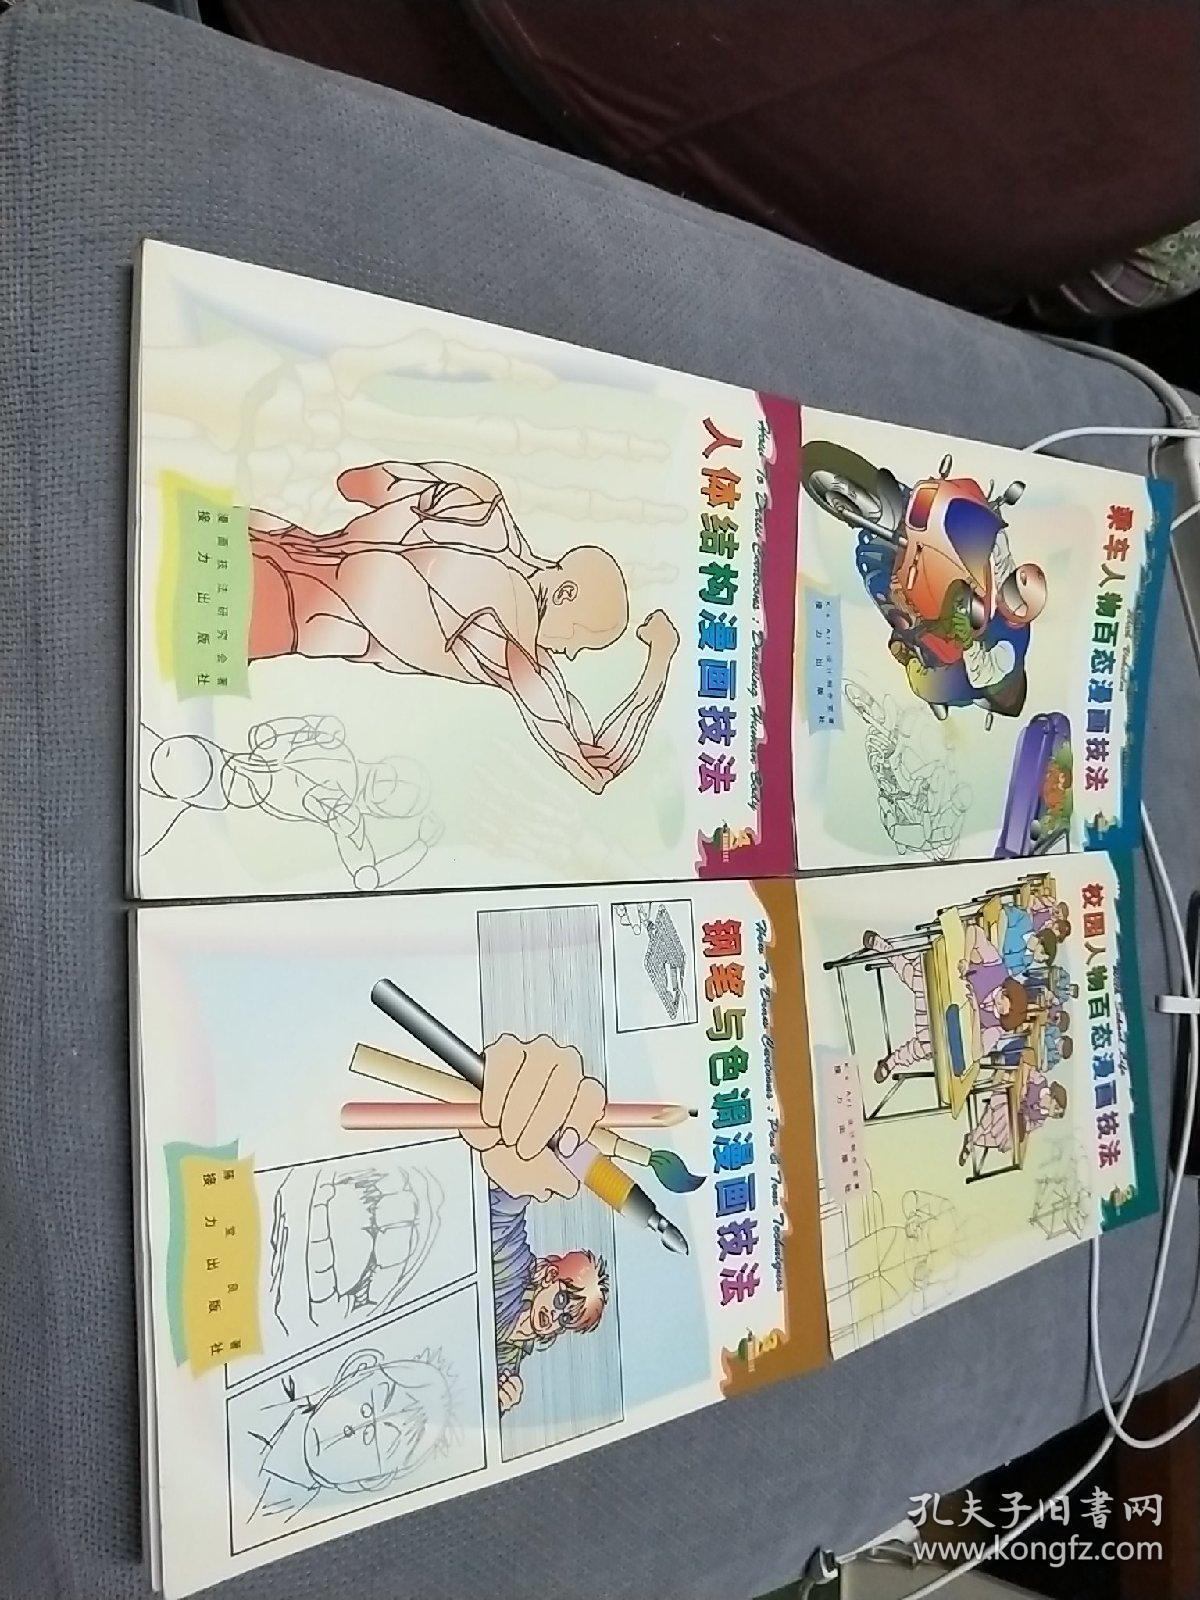 漫画绘制技法速成系列丛书:四册合售，1997一版一印
乘车人物百态+校园人物百态+钢笔与色调+人体结构